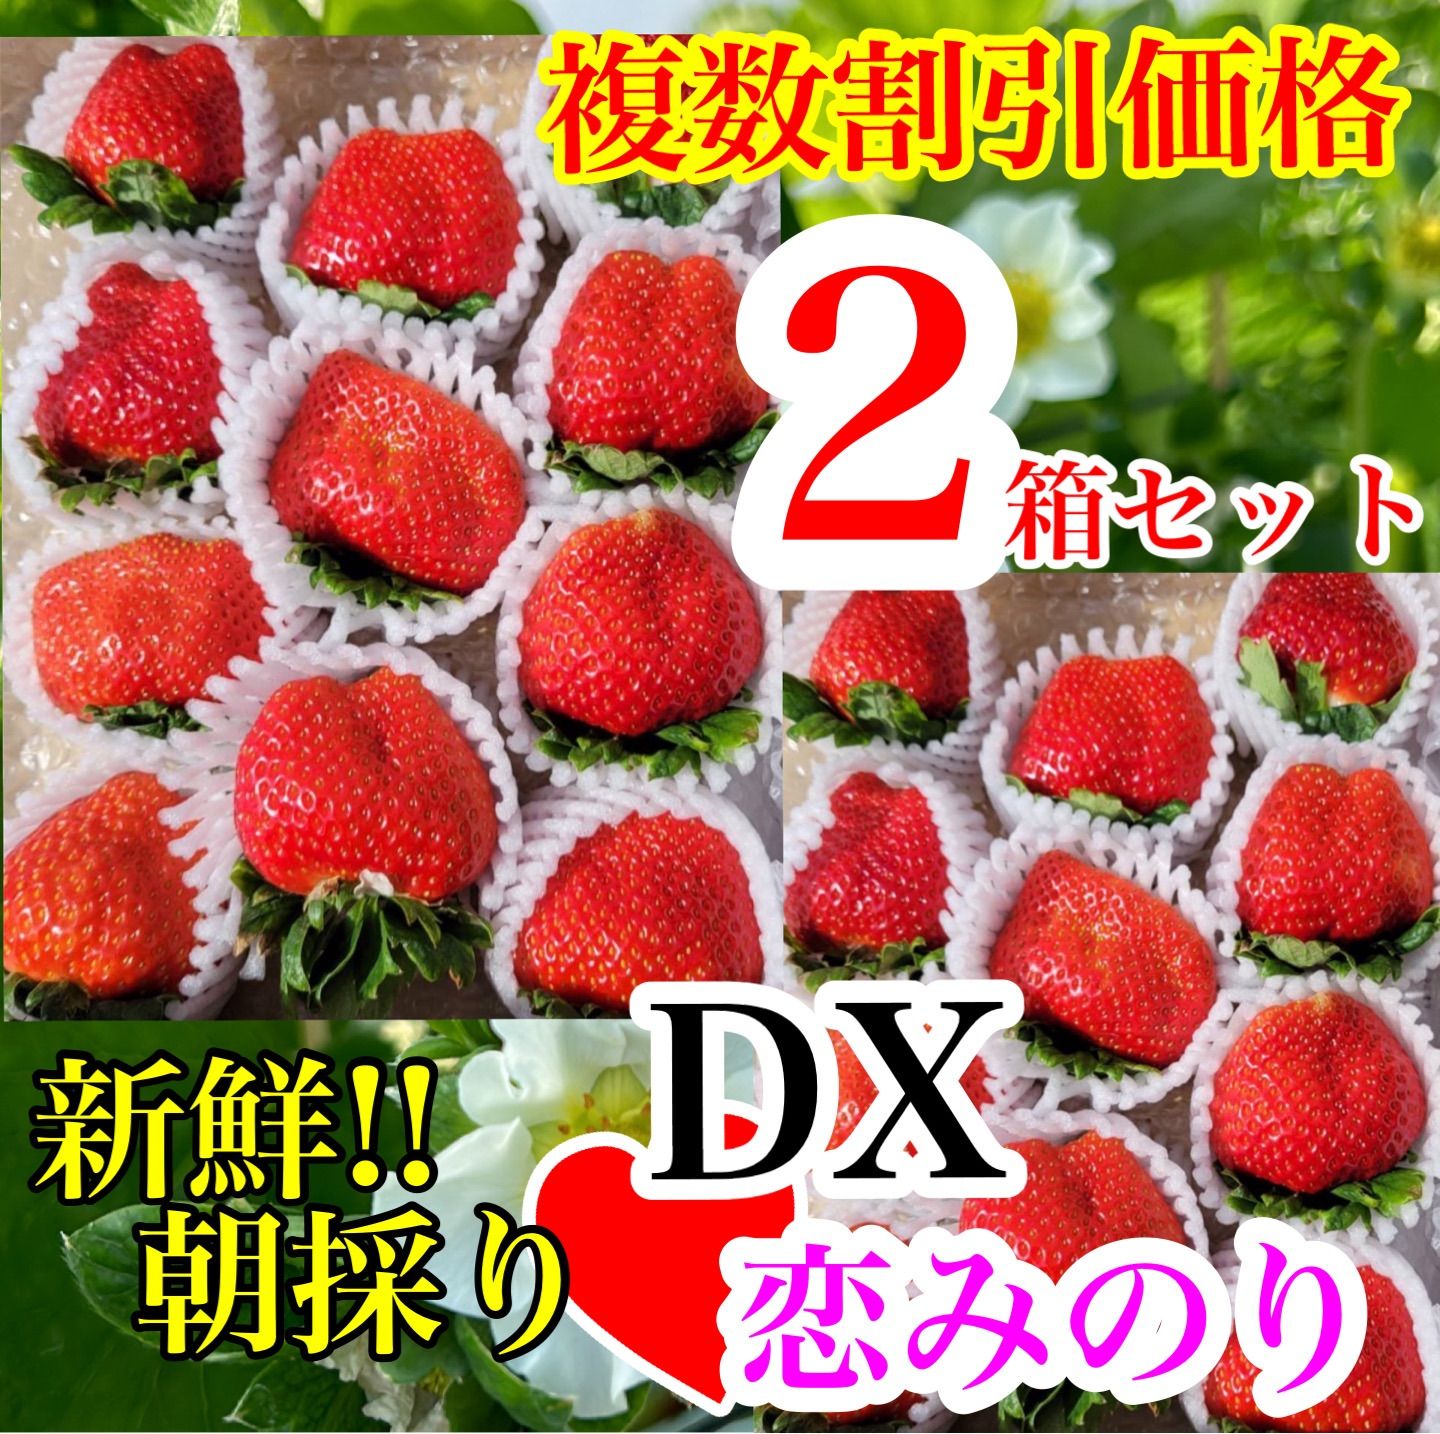 常温☆DX恋みのり 2箱セット ☆かんちゃん農園の甘いいちご - メルカリ